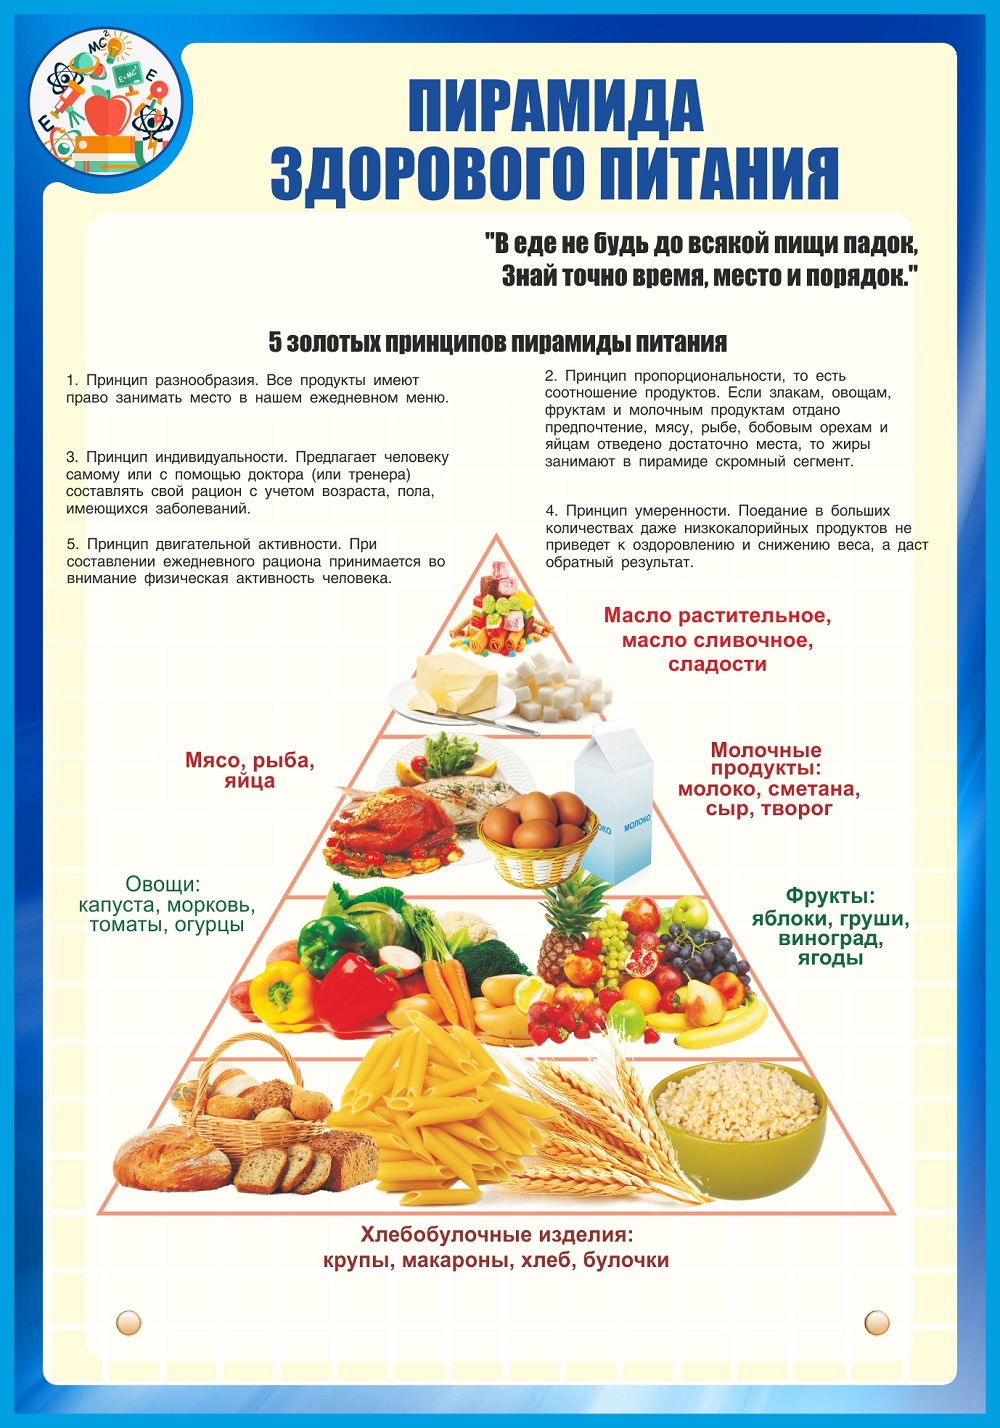 Мкоу питание. Правильное и здоровое питание. Стенд правильное питание. Питание пирамида здорового питания. Пирамида правильного питания для школьников.